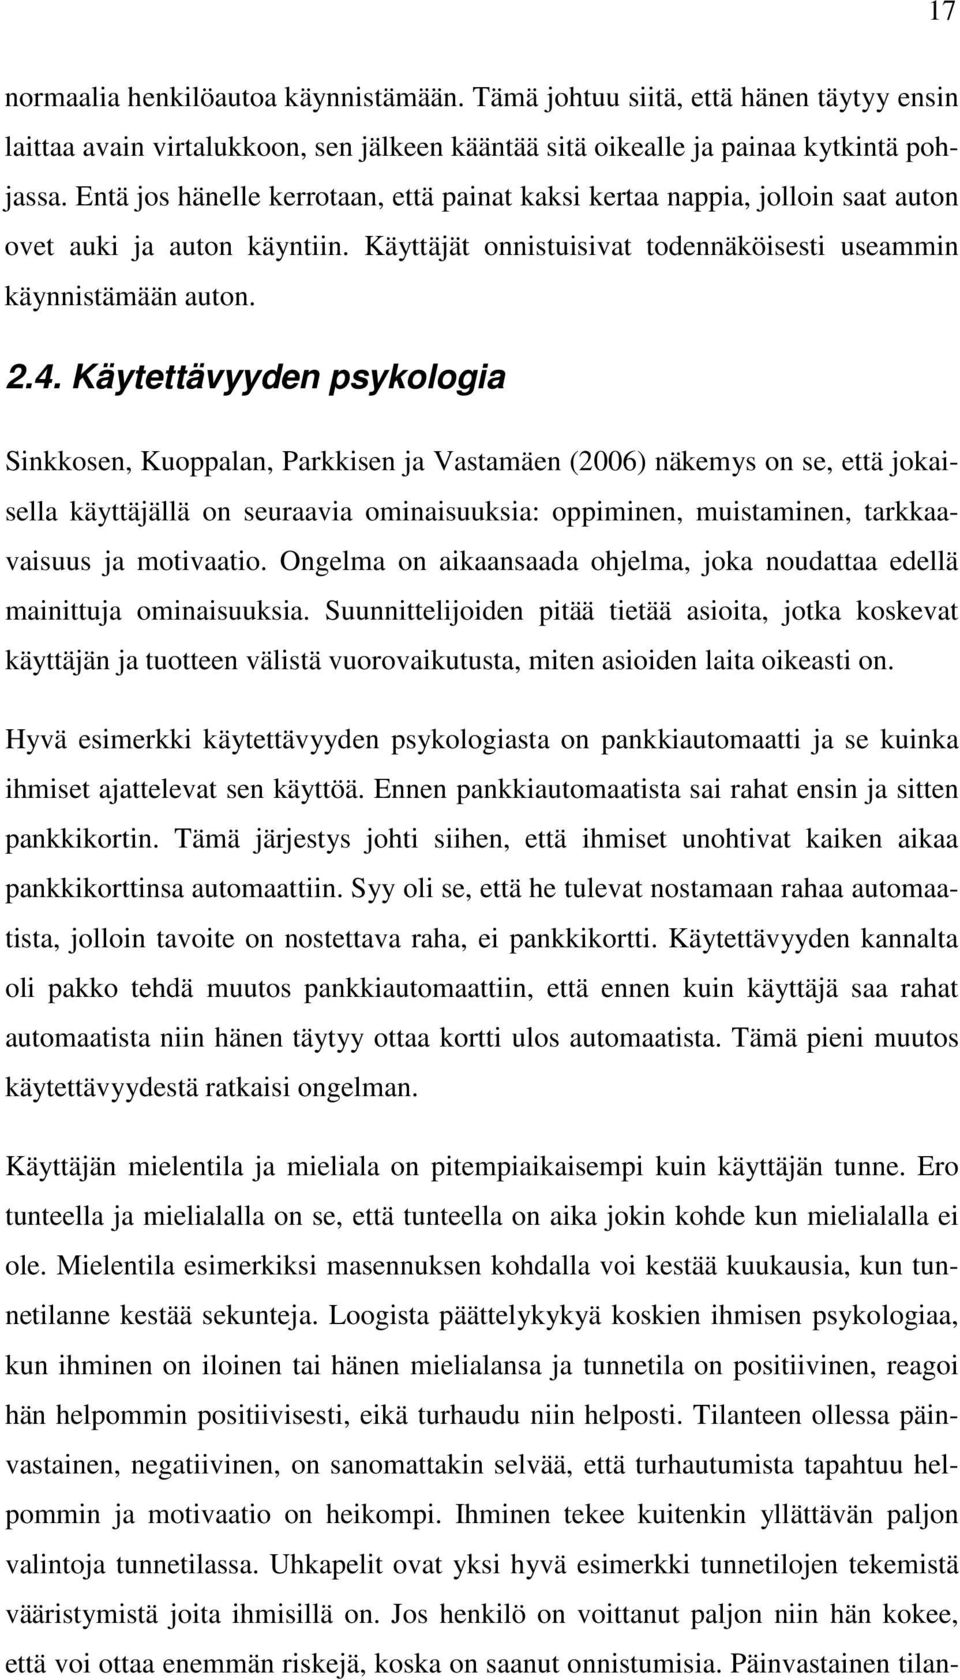 Käytettävyyden psykologia Sinkkosen, Kuoppalan, Parkkisen ja Vastamäen (2006) näkemys on se, että jokaisella käyttäjällä on seuraavia ominaisuuksia: oppiminen, muistaminen, tarkkaavaisuus ja